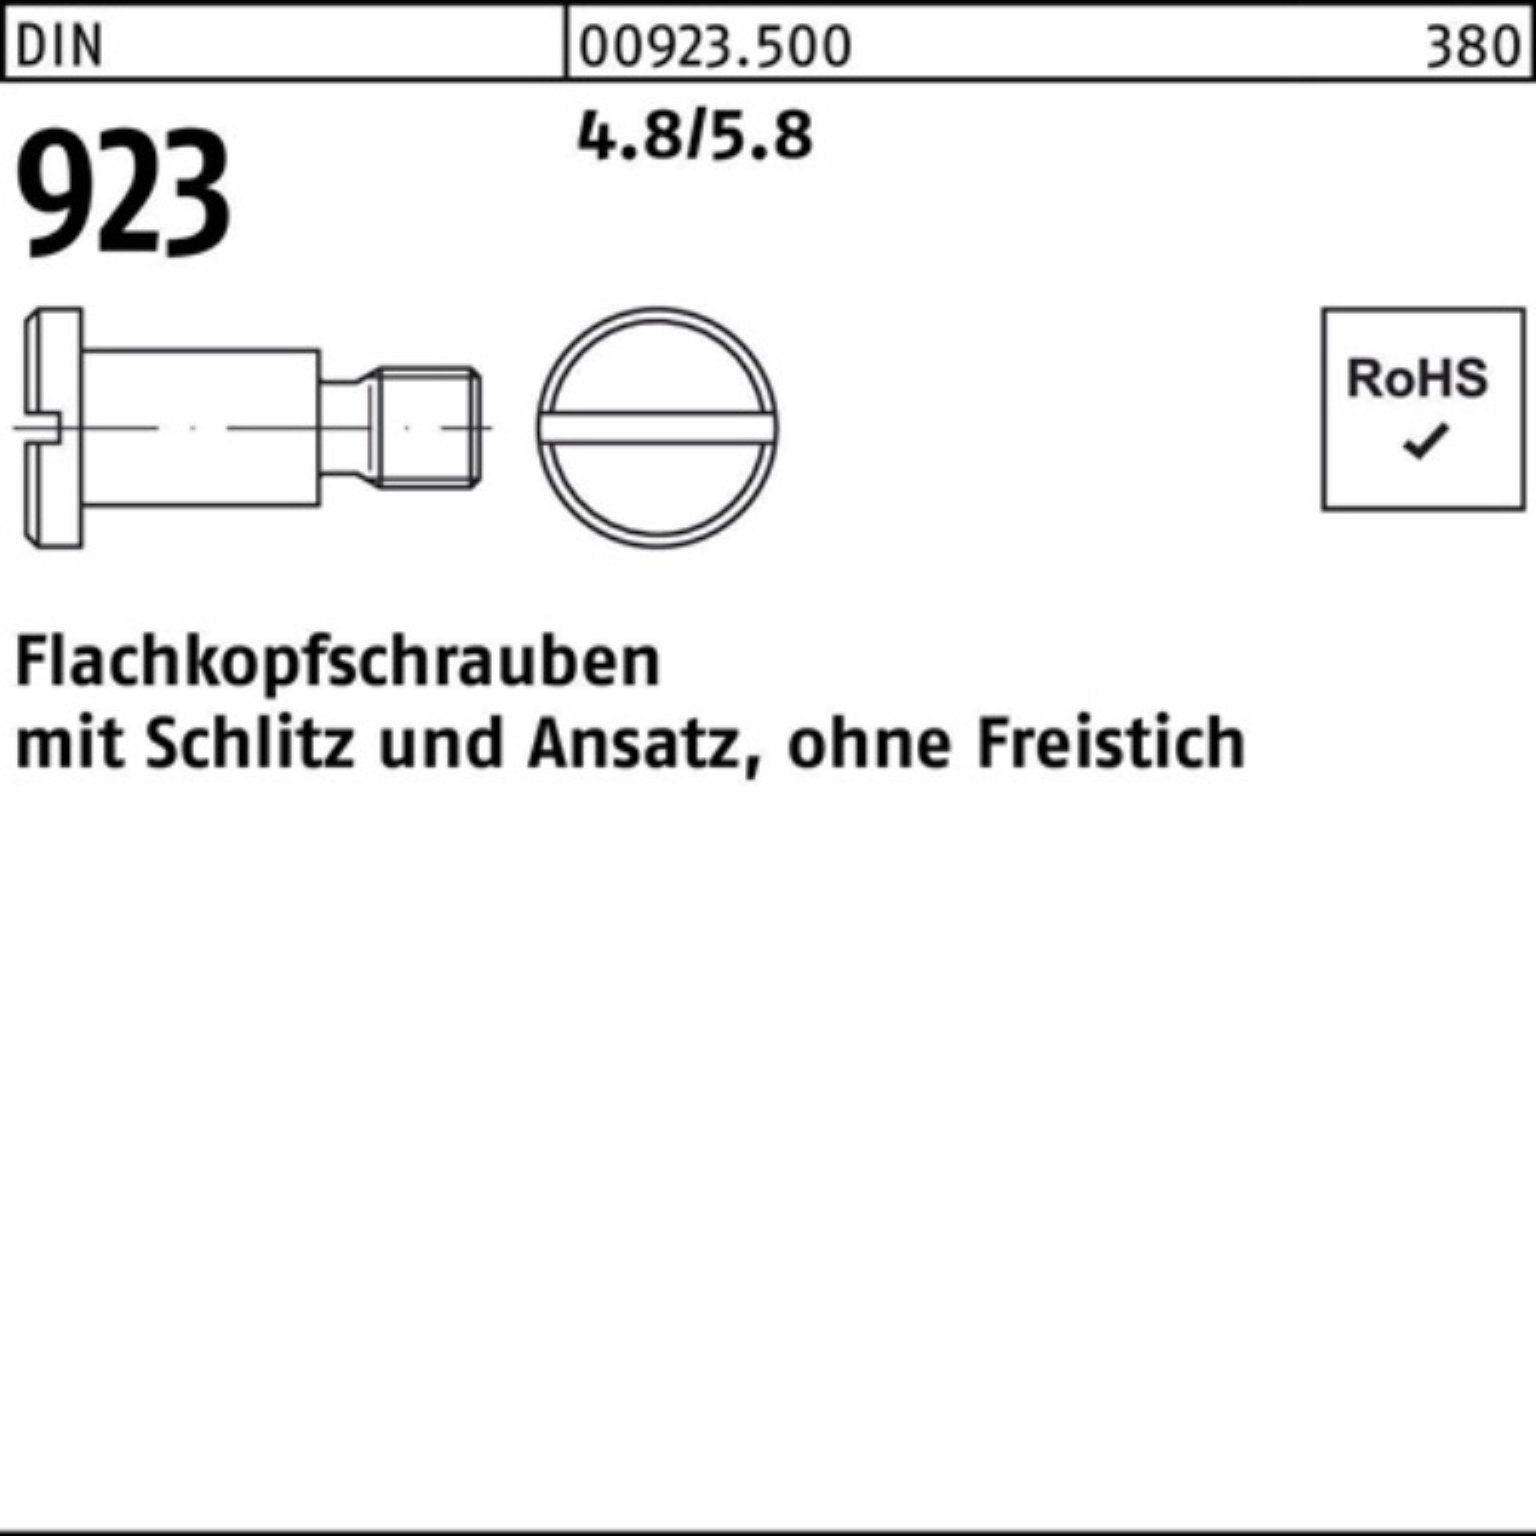 8x 4,5 Schlitz/Ansatz 100er DIN Pack Reyher 923 M3x 4.8/5.8 Schraube Flachkopfschraube